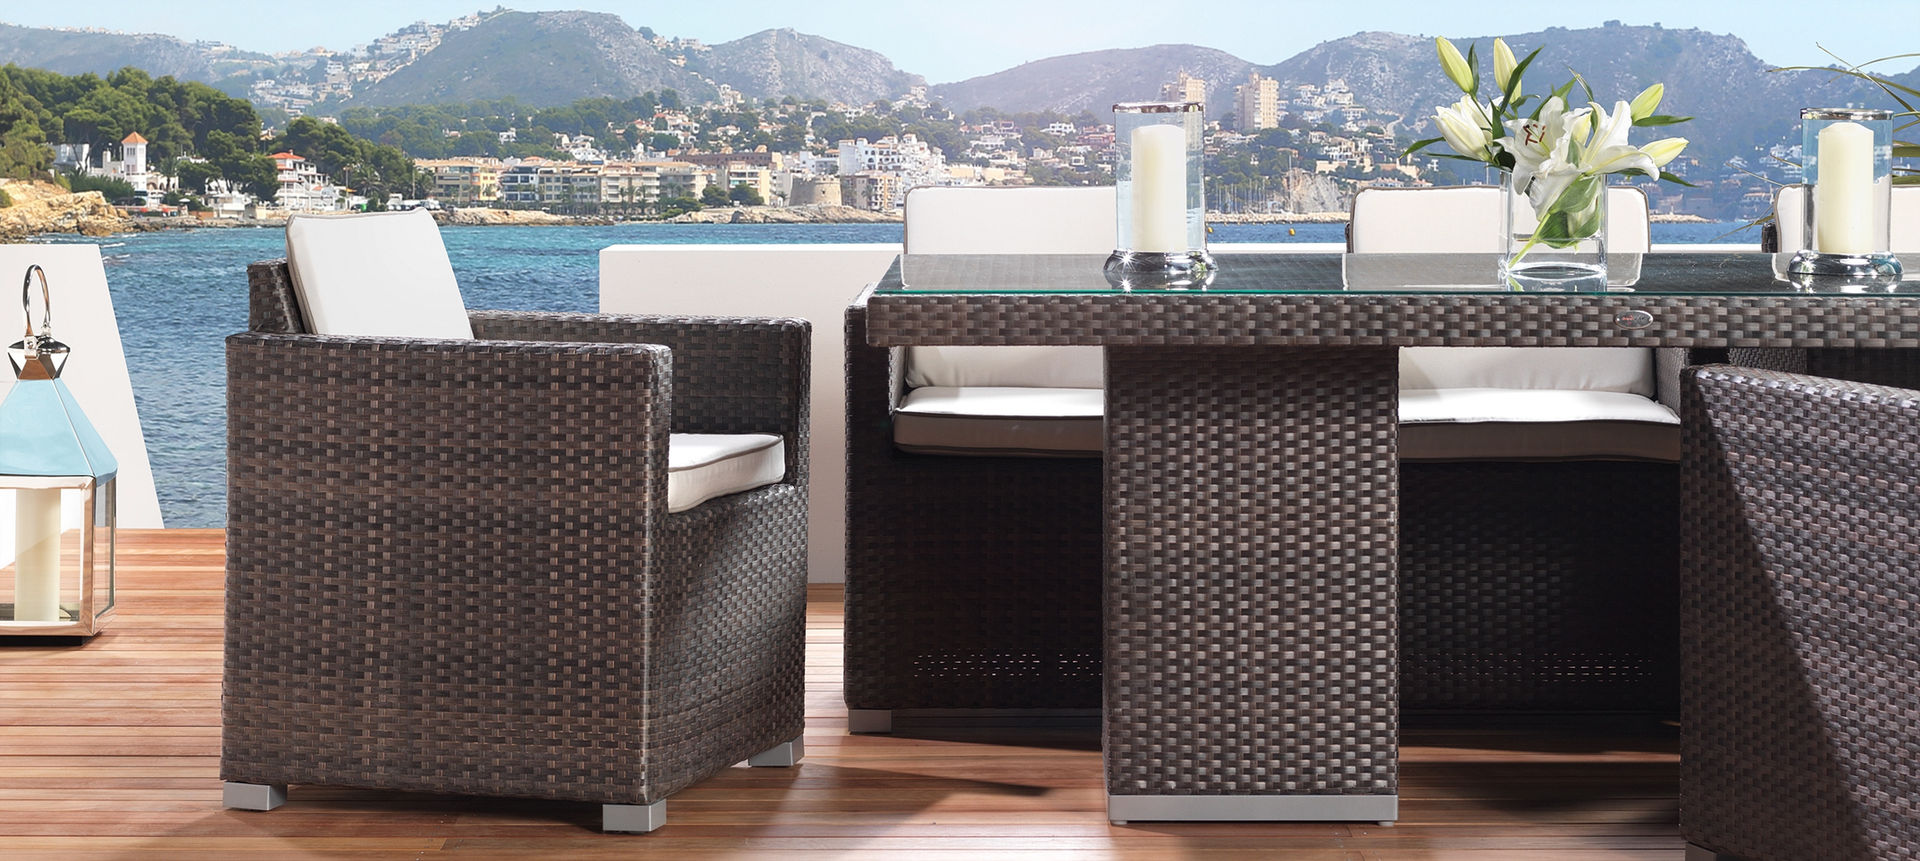 LuxDeco - The Riviera Collection - Dining Table LuxDeco Balcones y terrazas de estilo moderno Ratán/Mimbre Turquesa Mobiliario